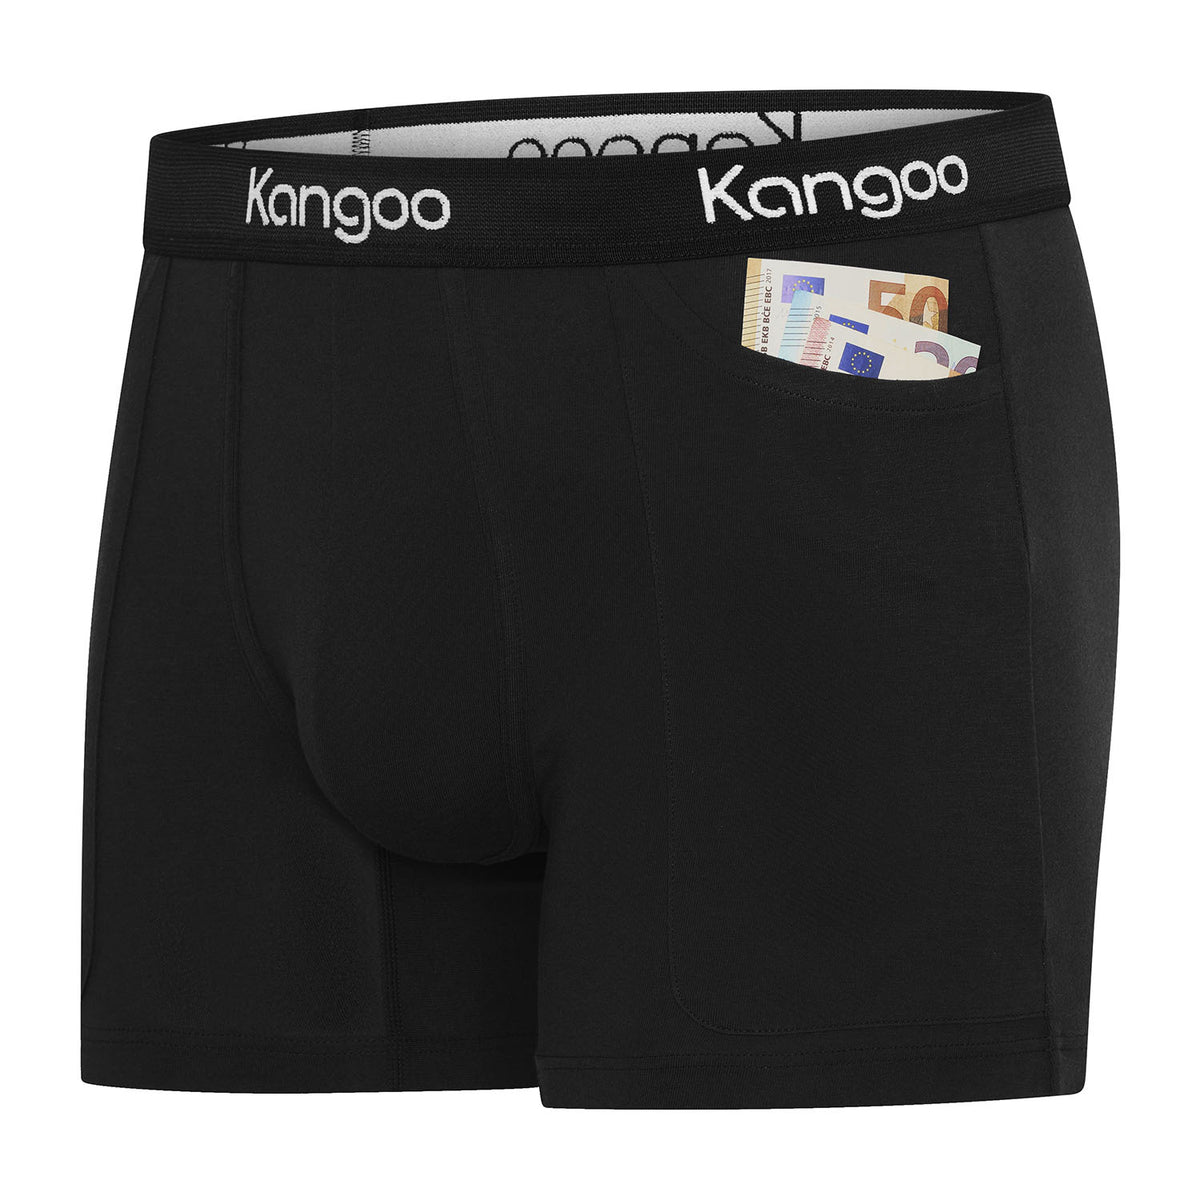 Kangoo - Schrijf een review